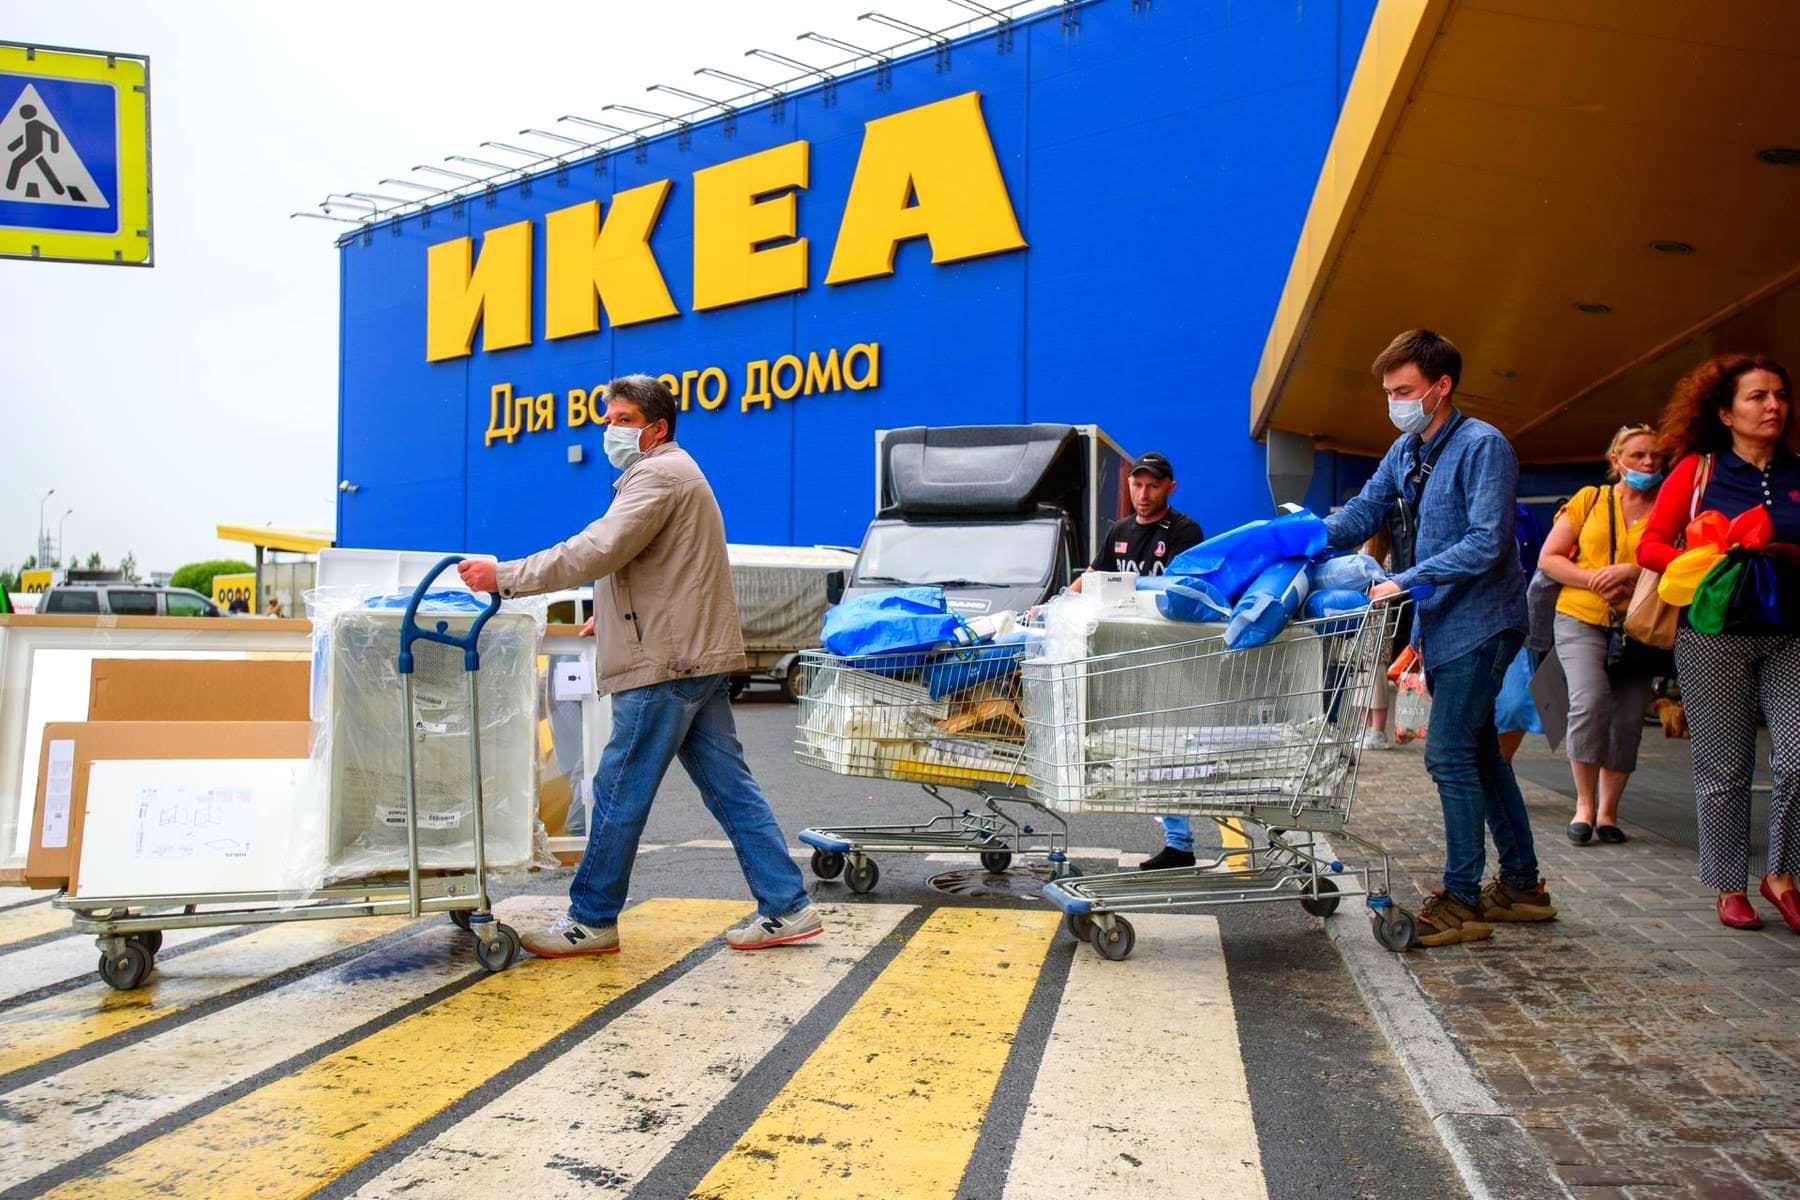 Купить товары IKEA в России вновь возможно. Цены приятно радуют